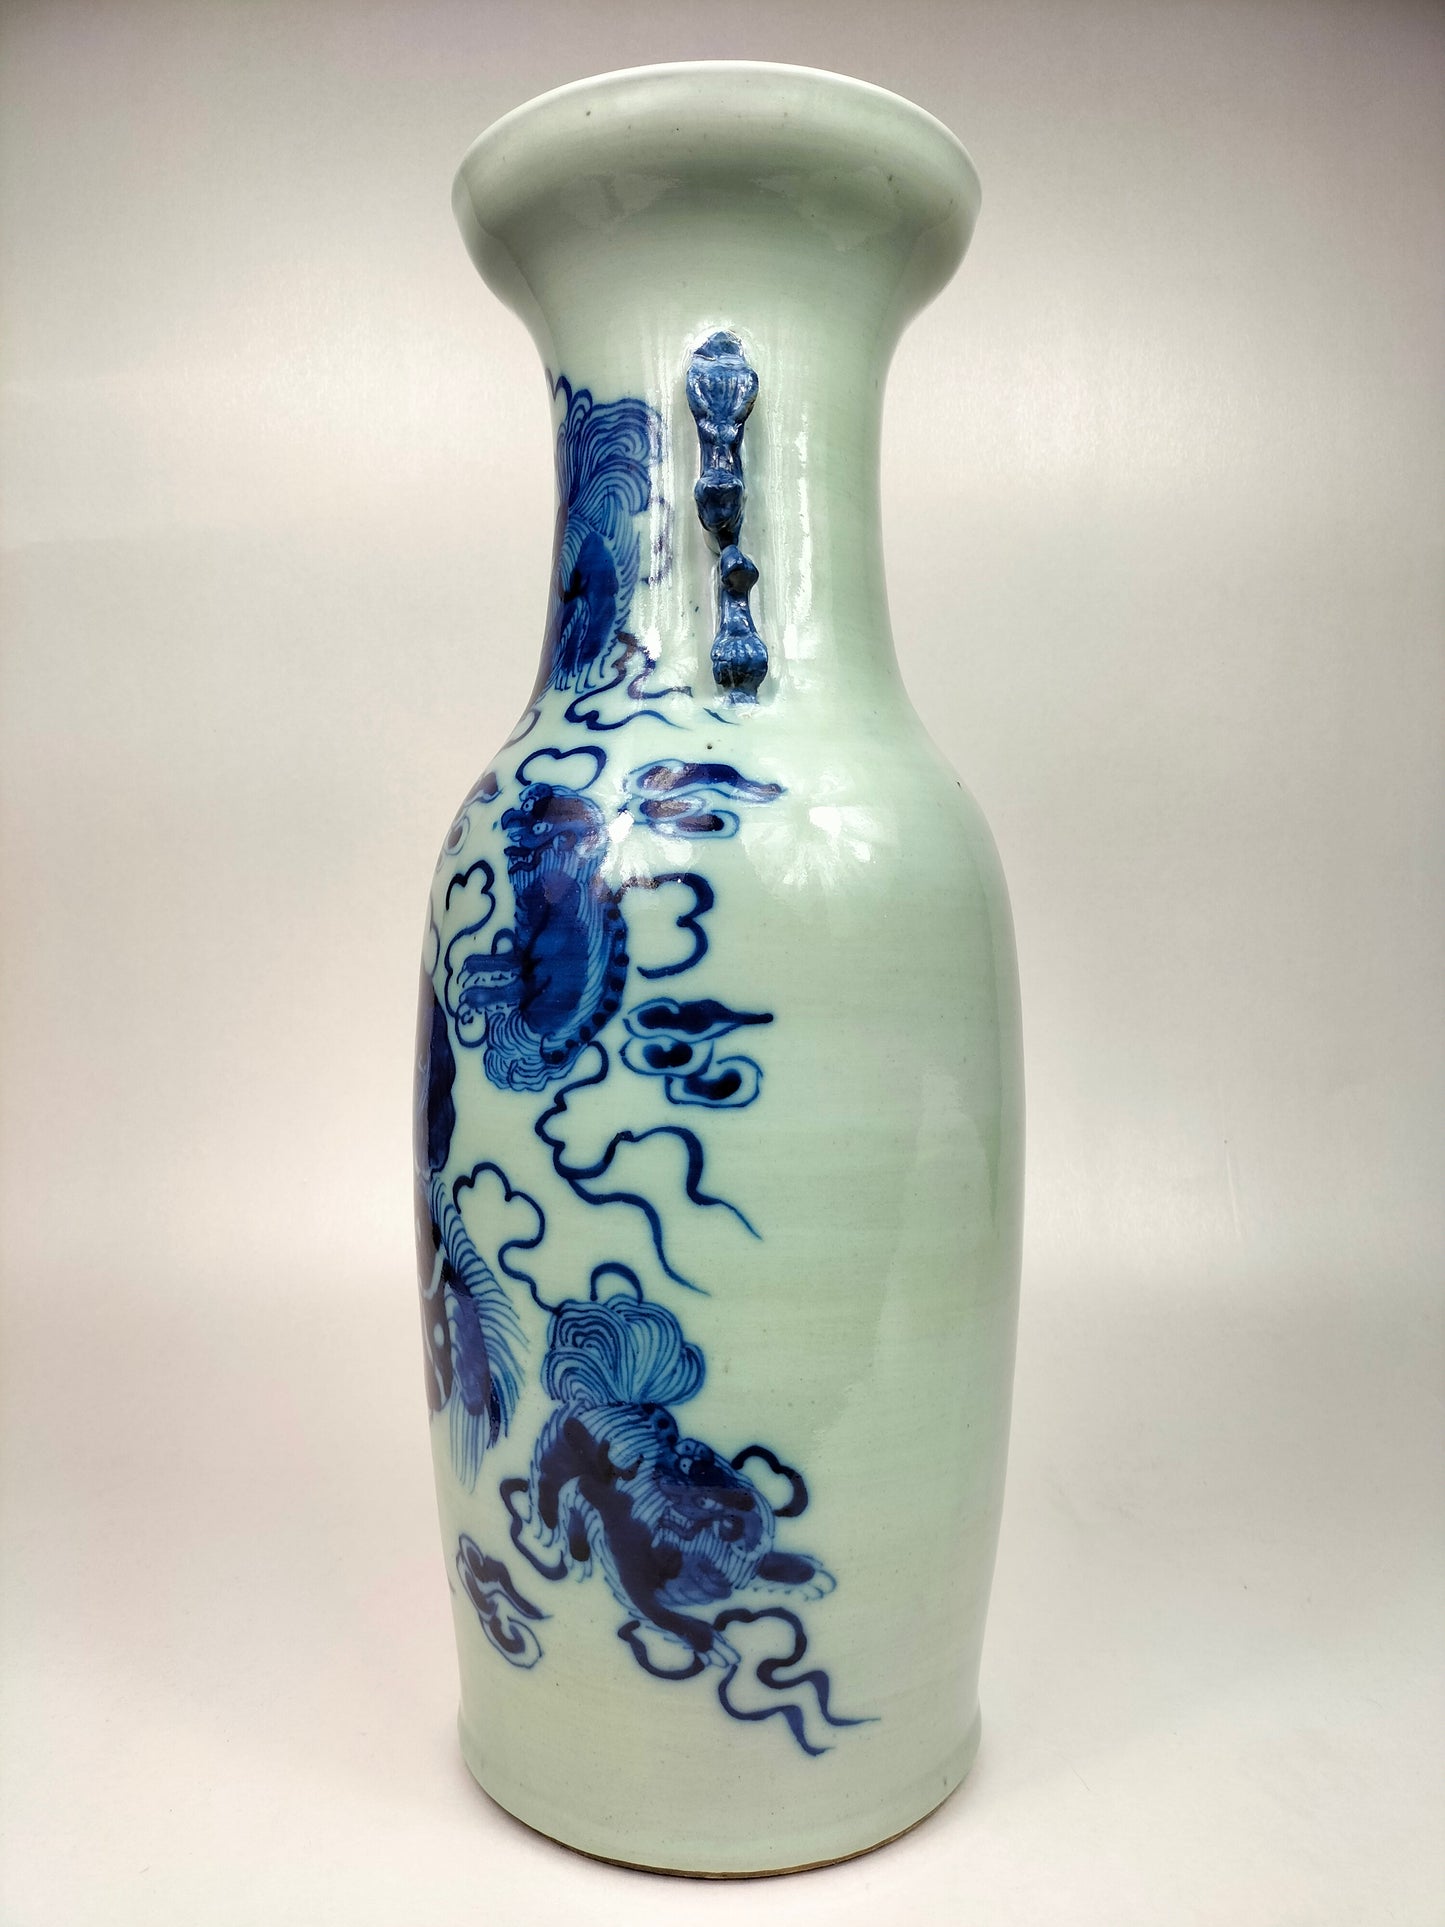 Grande vaso chinês antigo em cor celadon decorado com foo dog // Dinastia Qing - século XIX